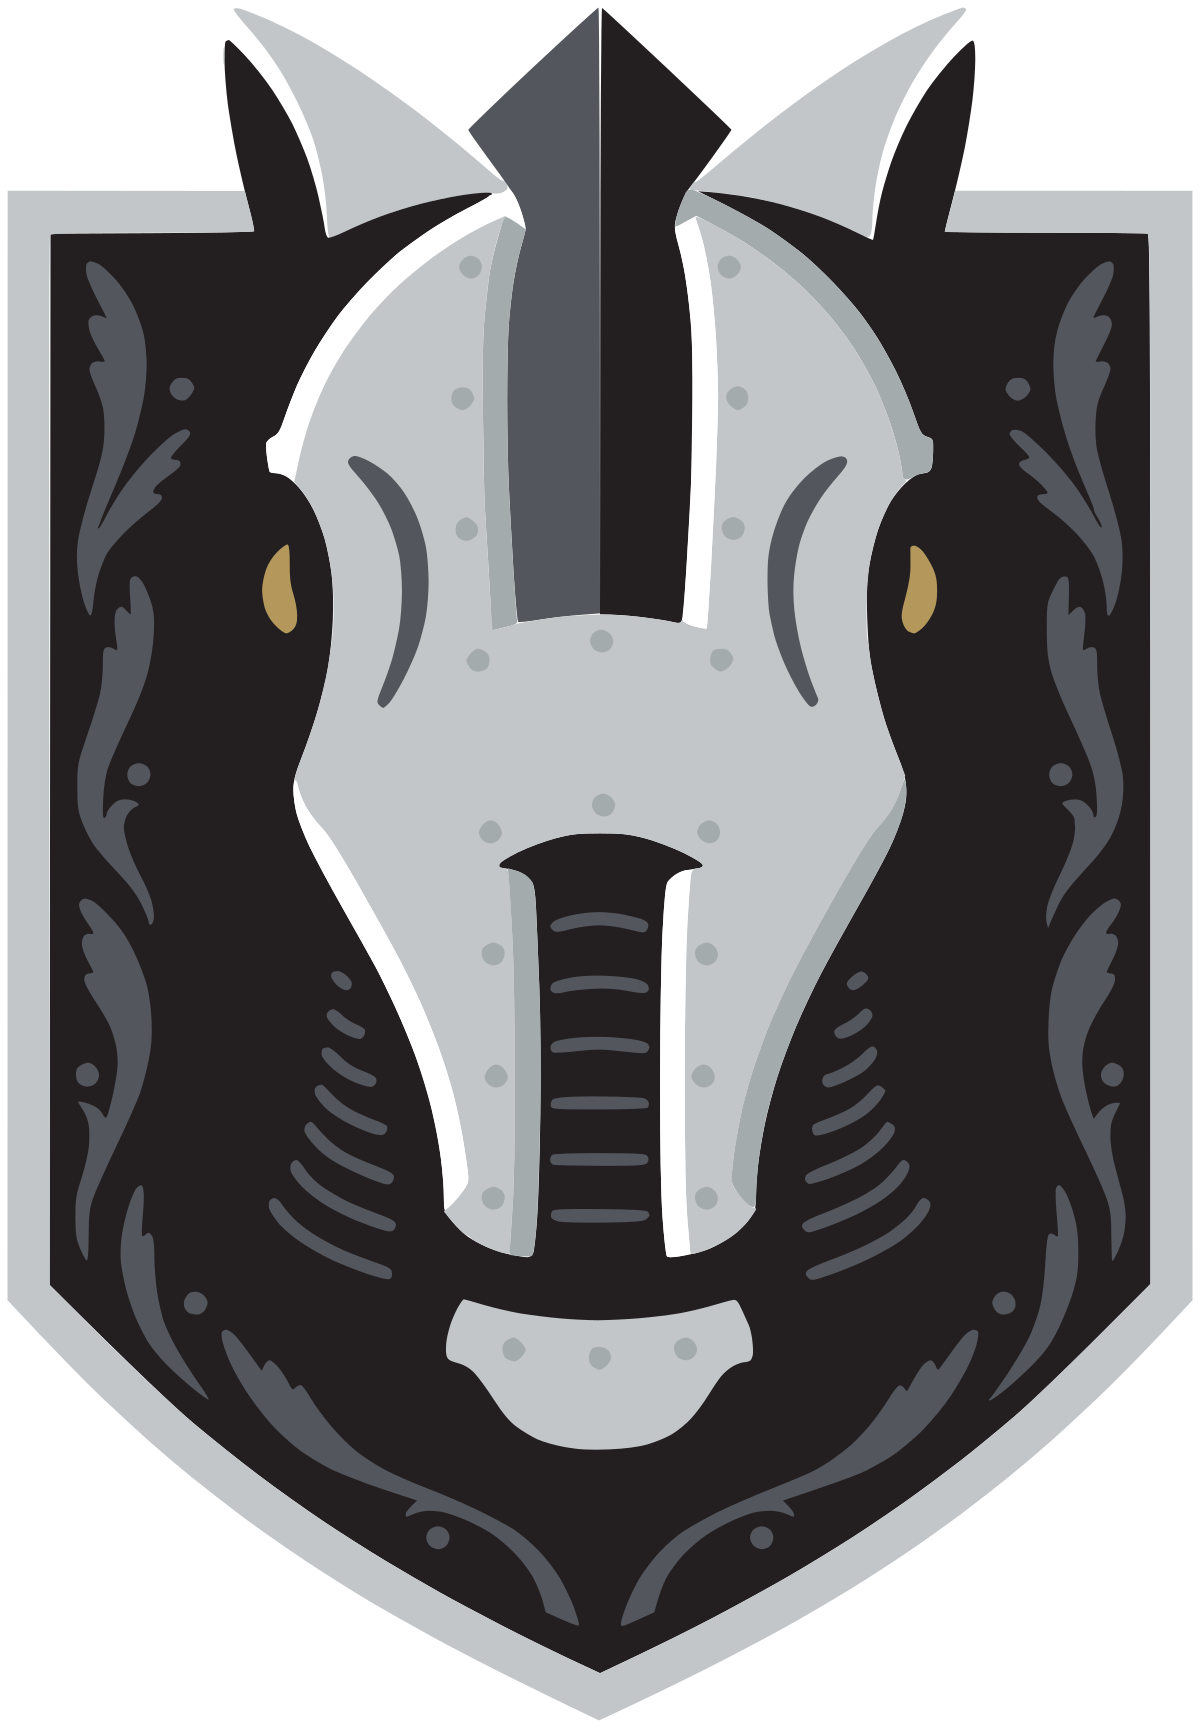 Rampage Knights - Wikipedia